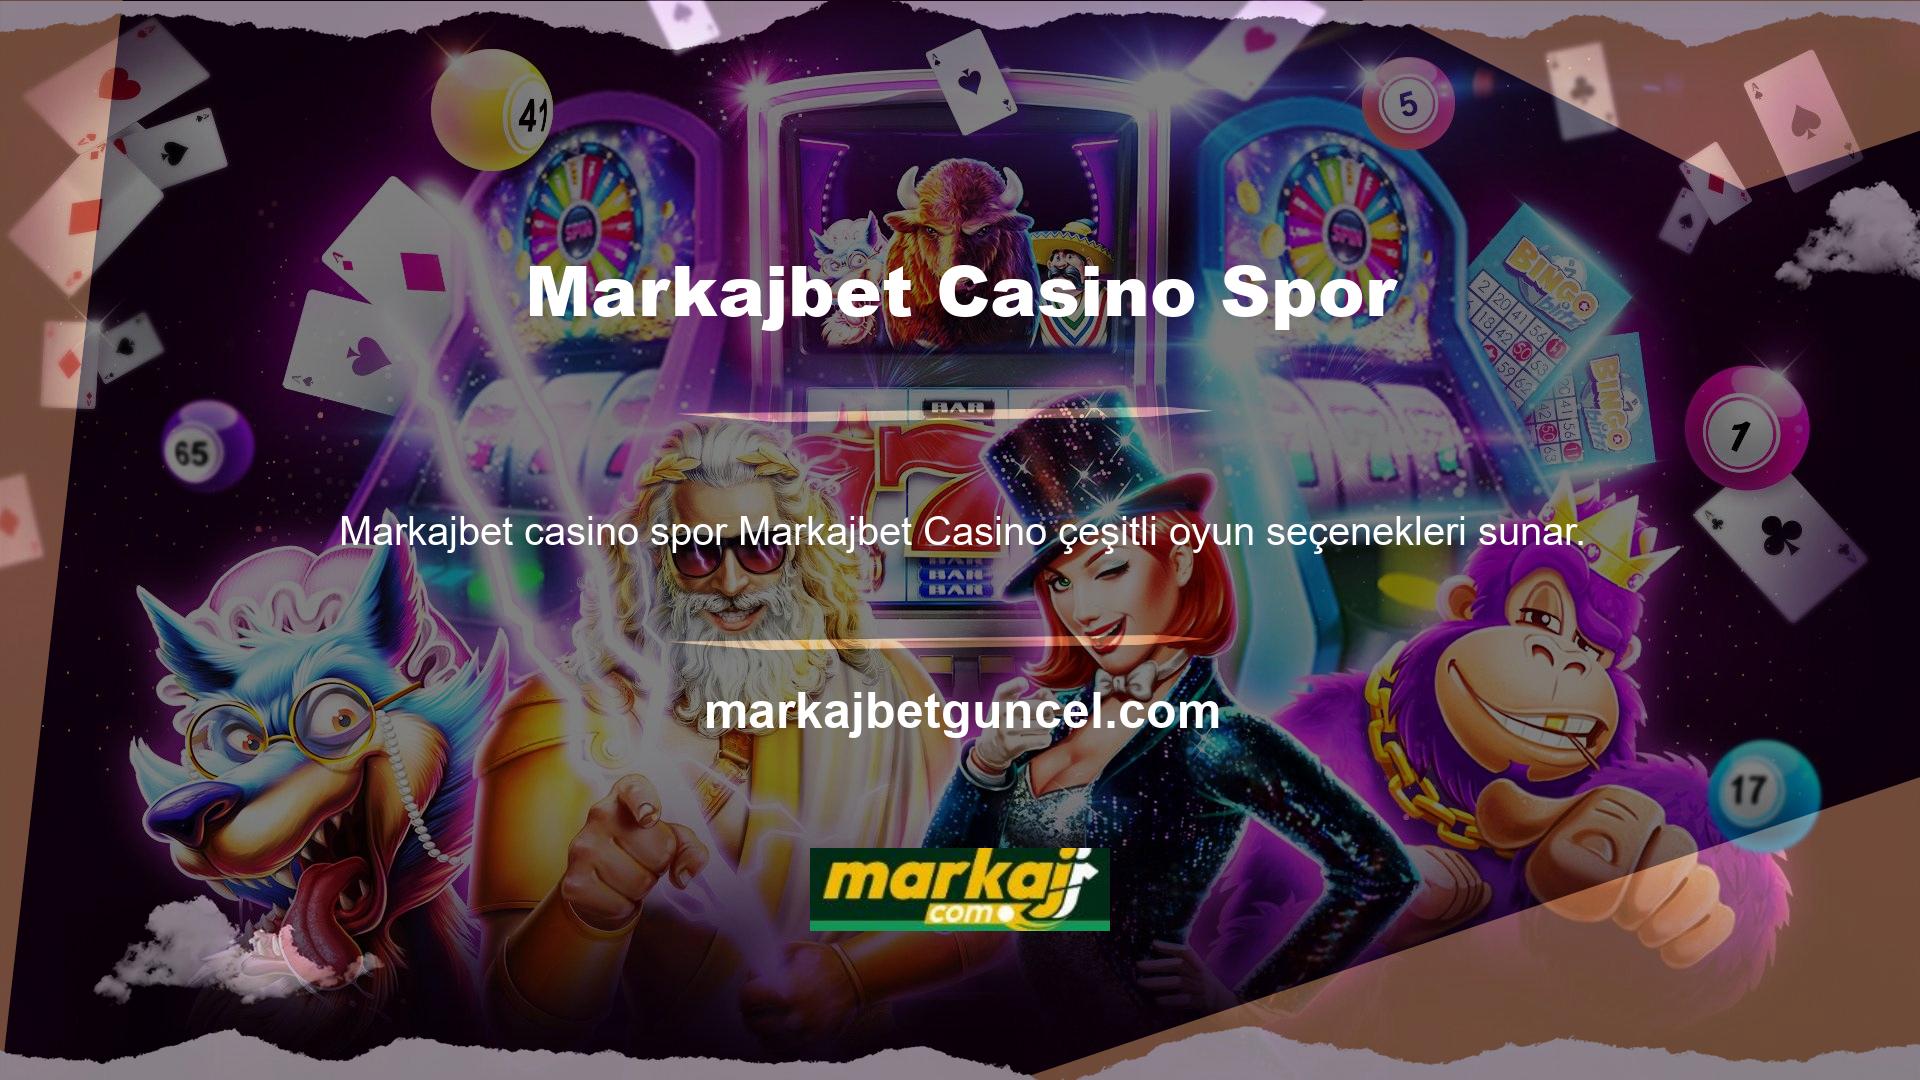 Henüz piyasaya sürülmemiş olsa da Markajbet zengin deneyime sahip Casino Spor' u, kullanıcıları eğlendirmek amacıyla kısıtlamaları kaldırdı